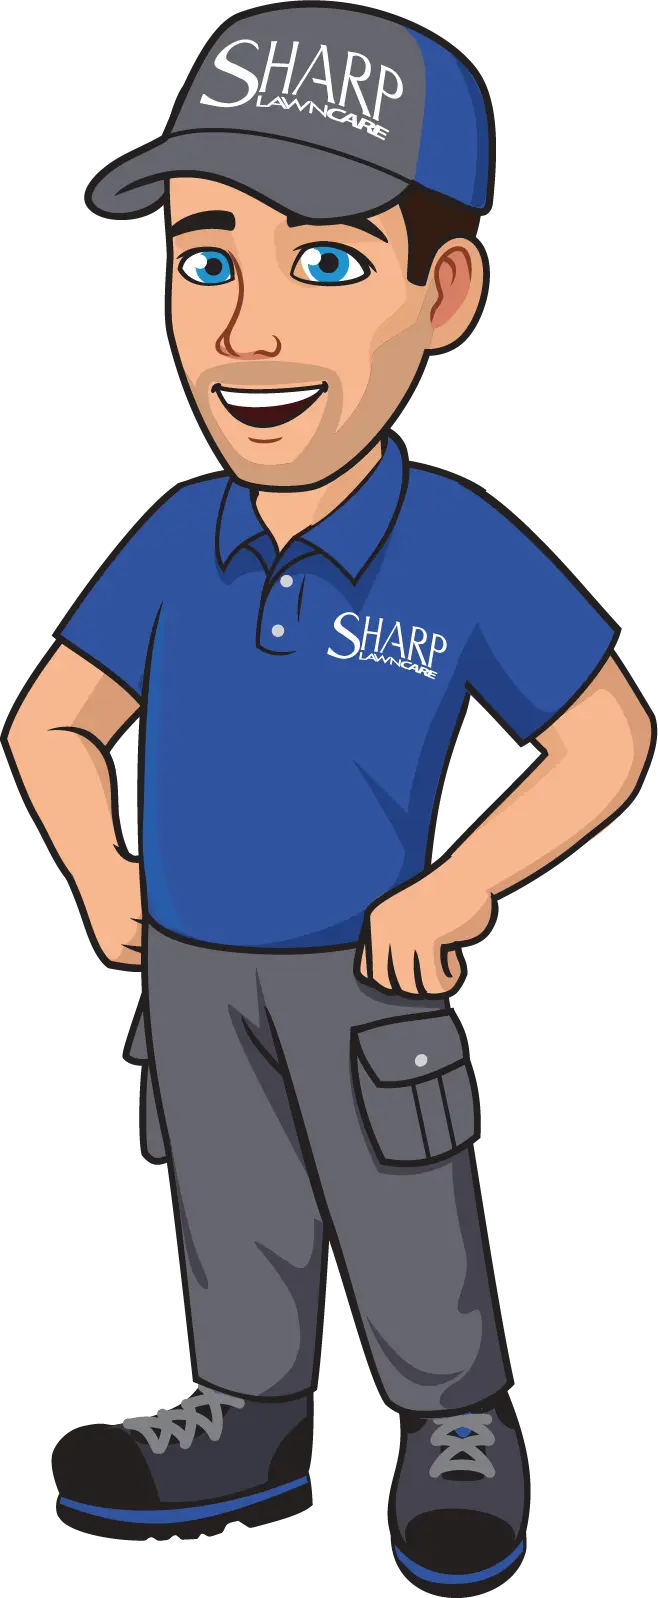 Sharp Lawn Care brand hero mascot